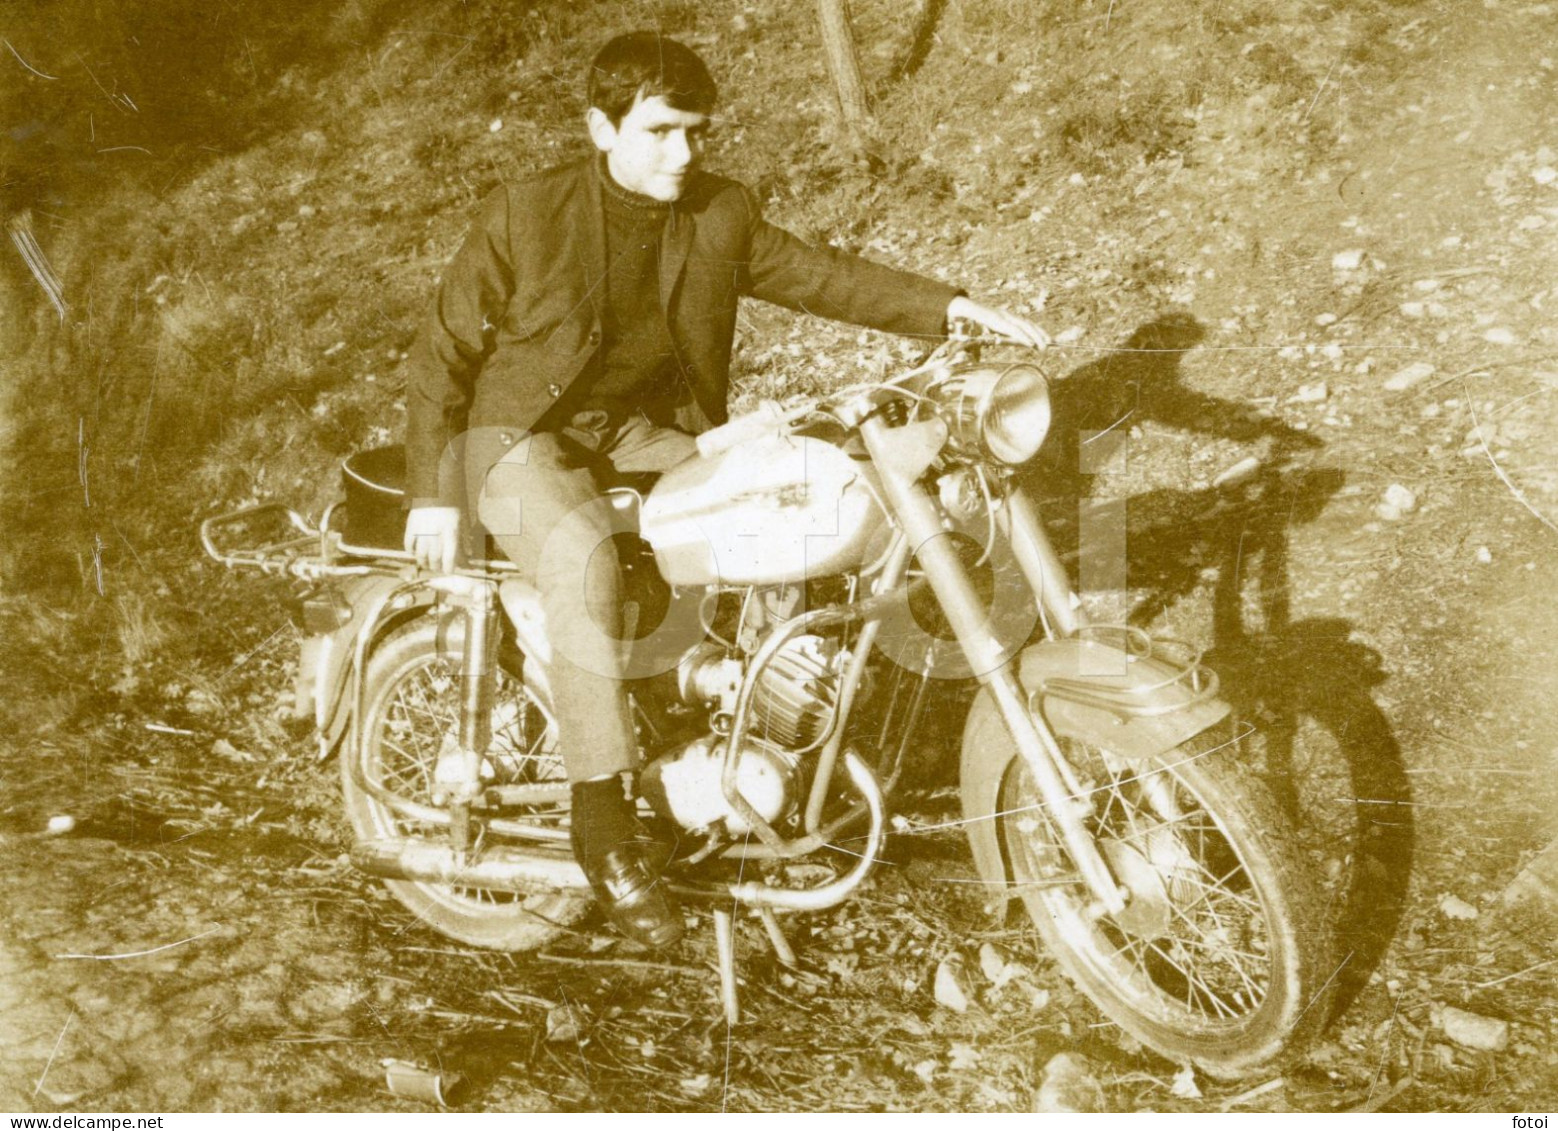 1970 MOTORIZADA PERFECTA CASAL VILAR SACHS MOTOCYCLETTE ZUNDAPP PORTUGAL PHOTO FOTO At498 - Cycling